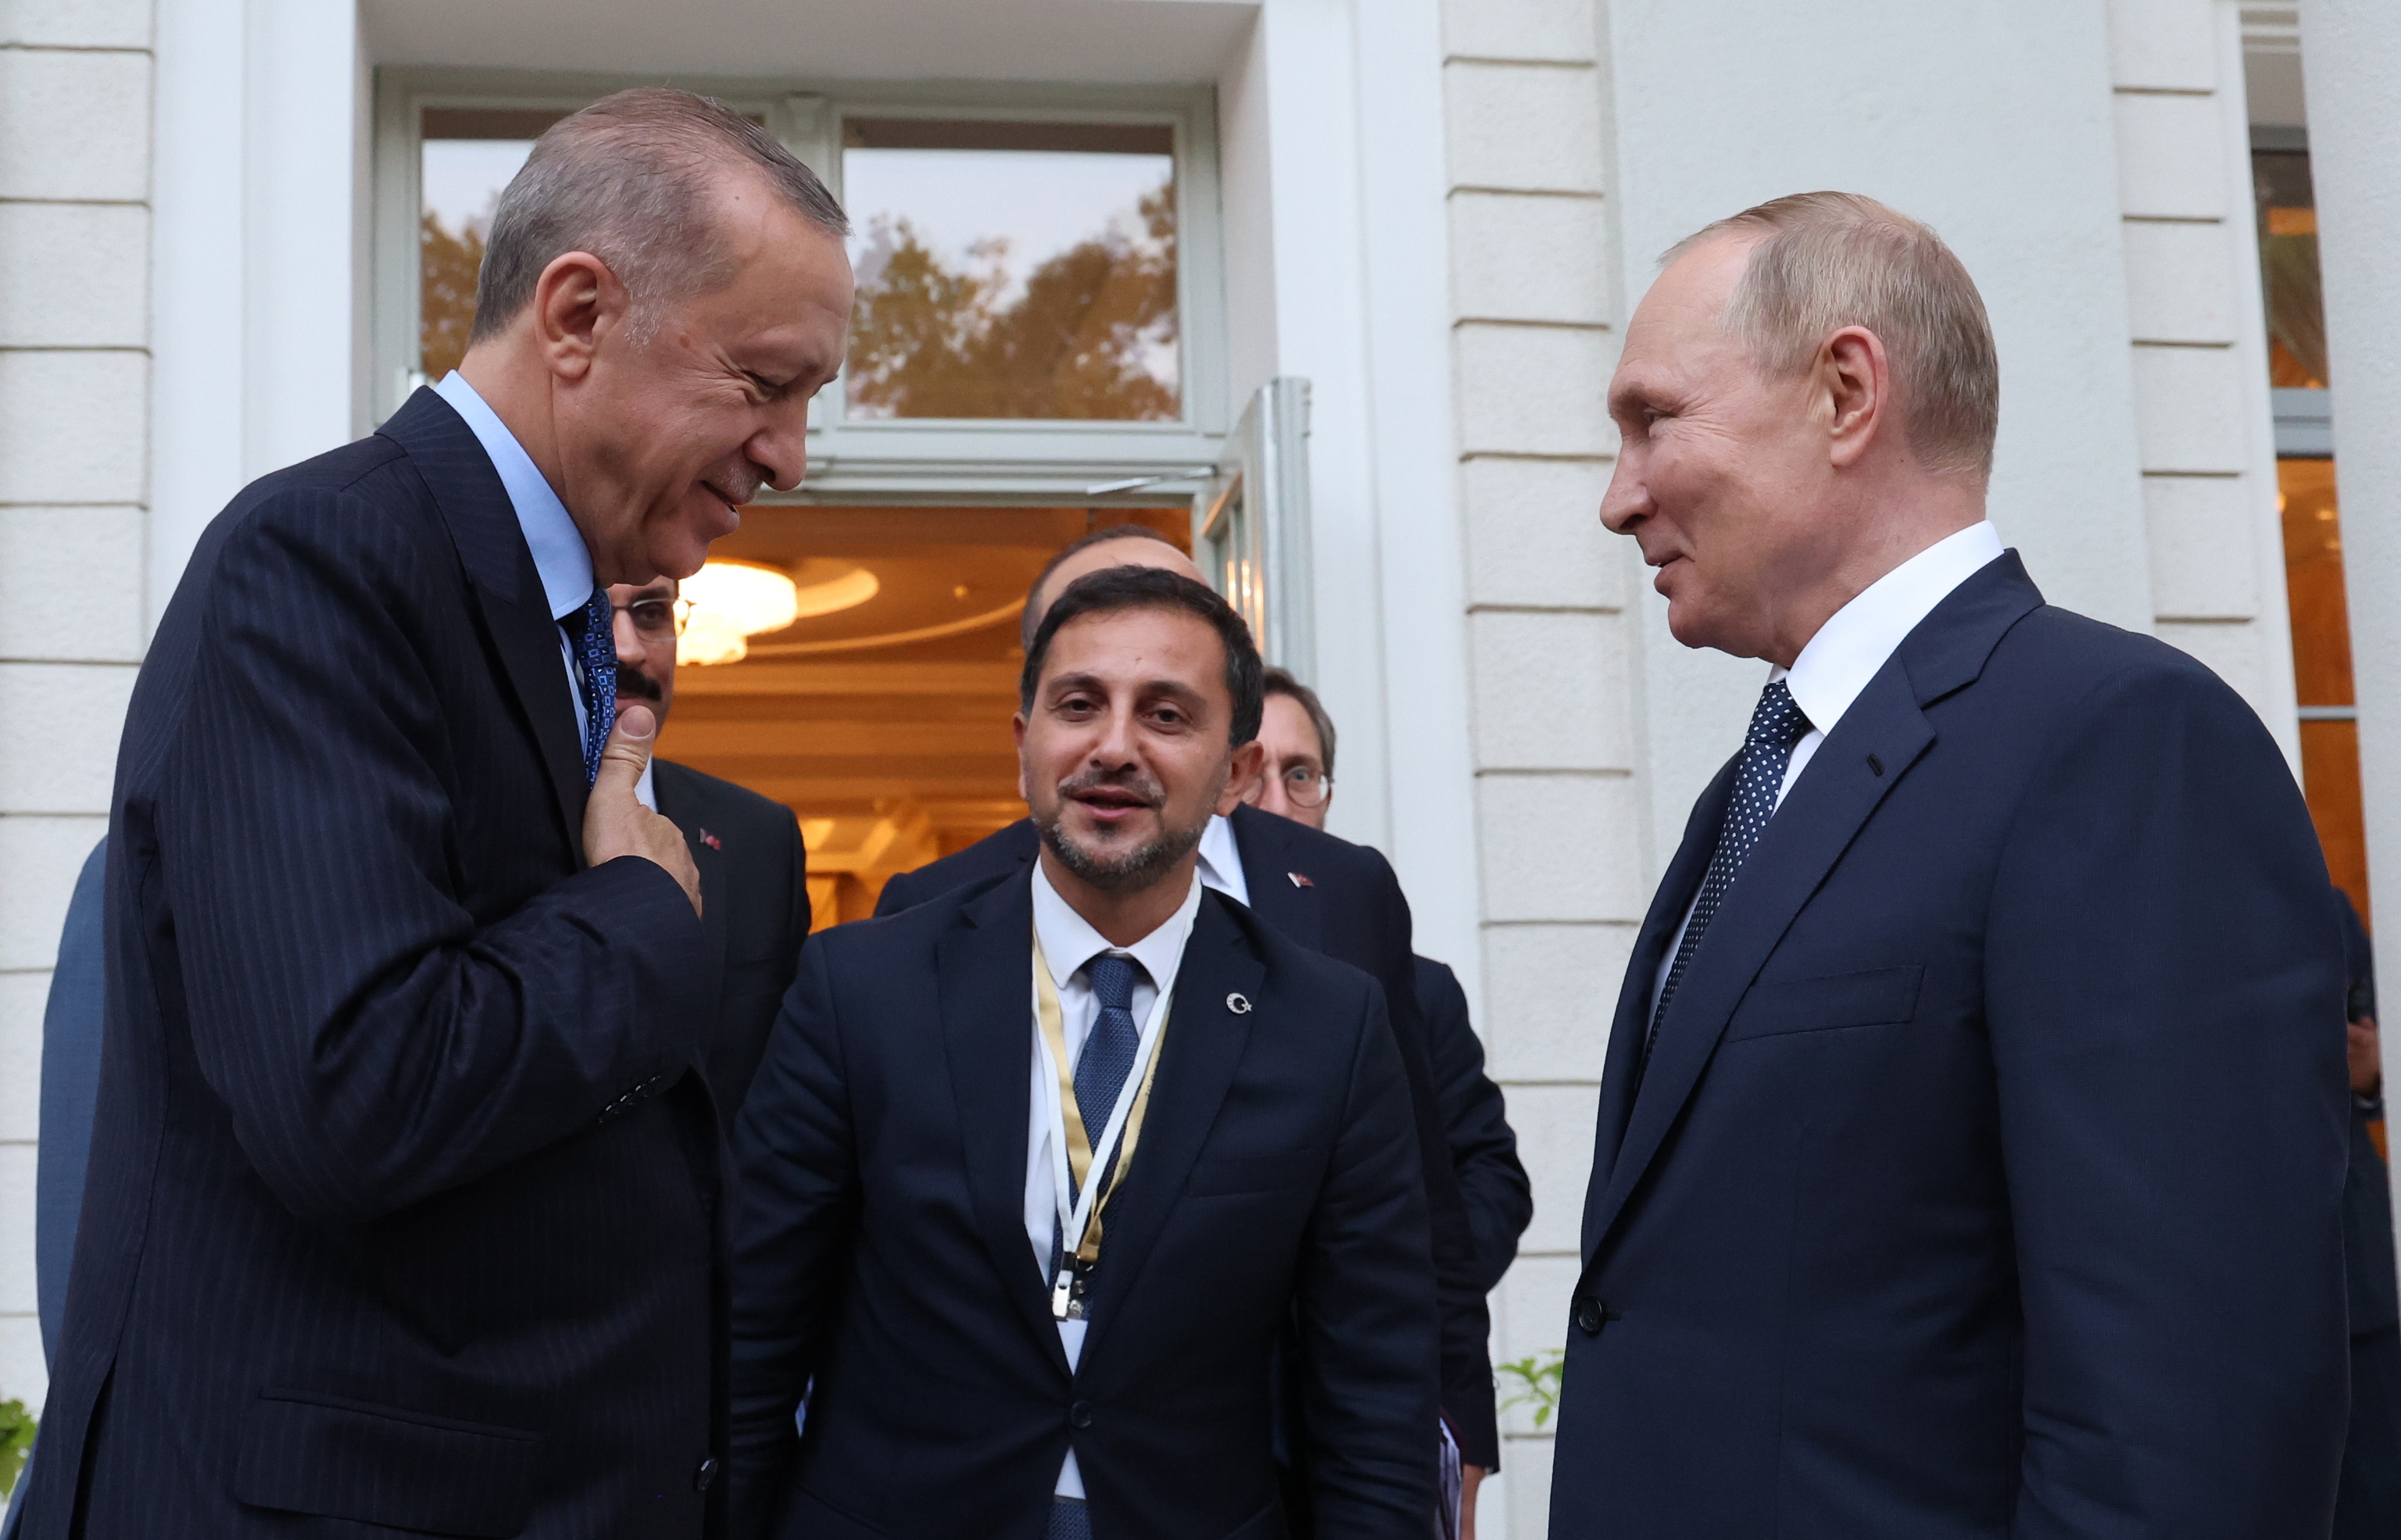 Los presidentes Putin y Erdogan se despiden tras su reunión en el balneario del Mar Negro de Sochi, Rusia.